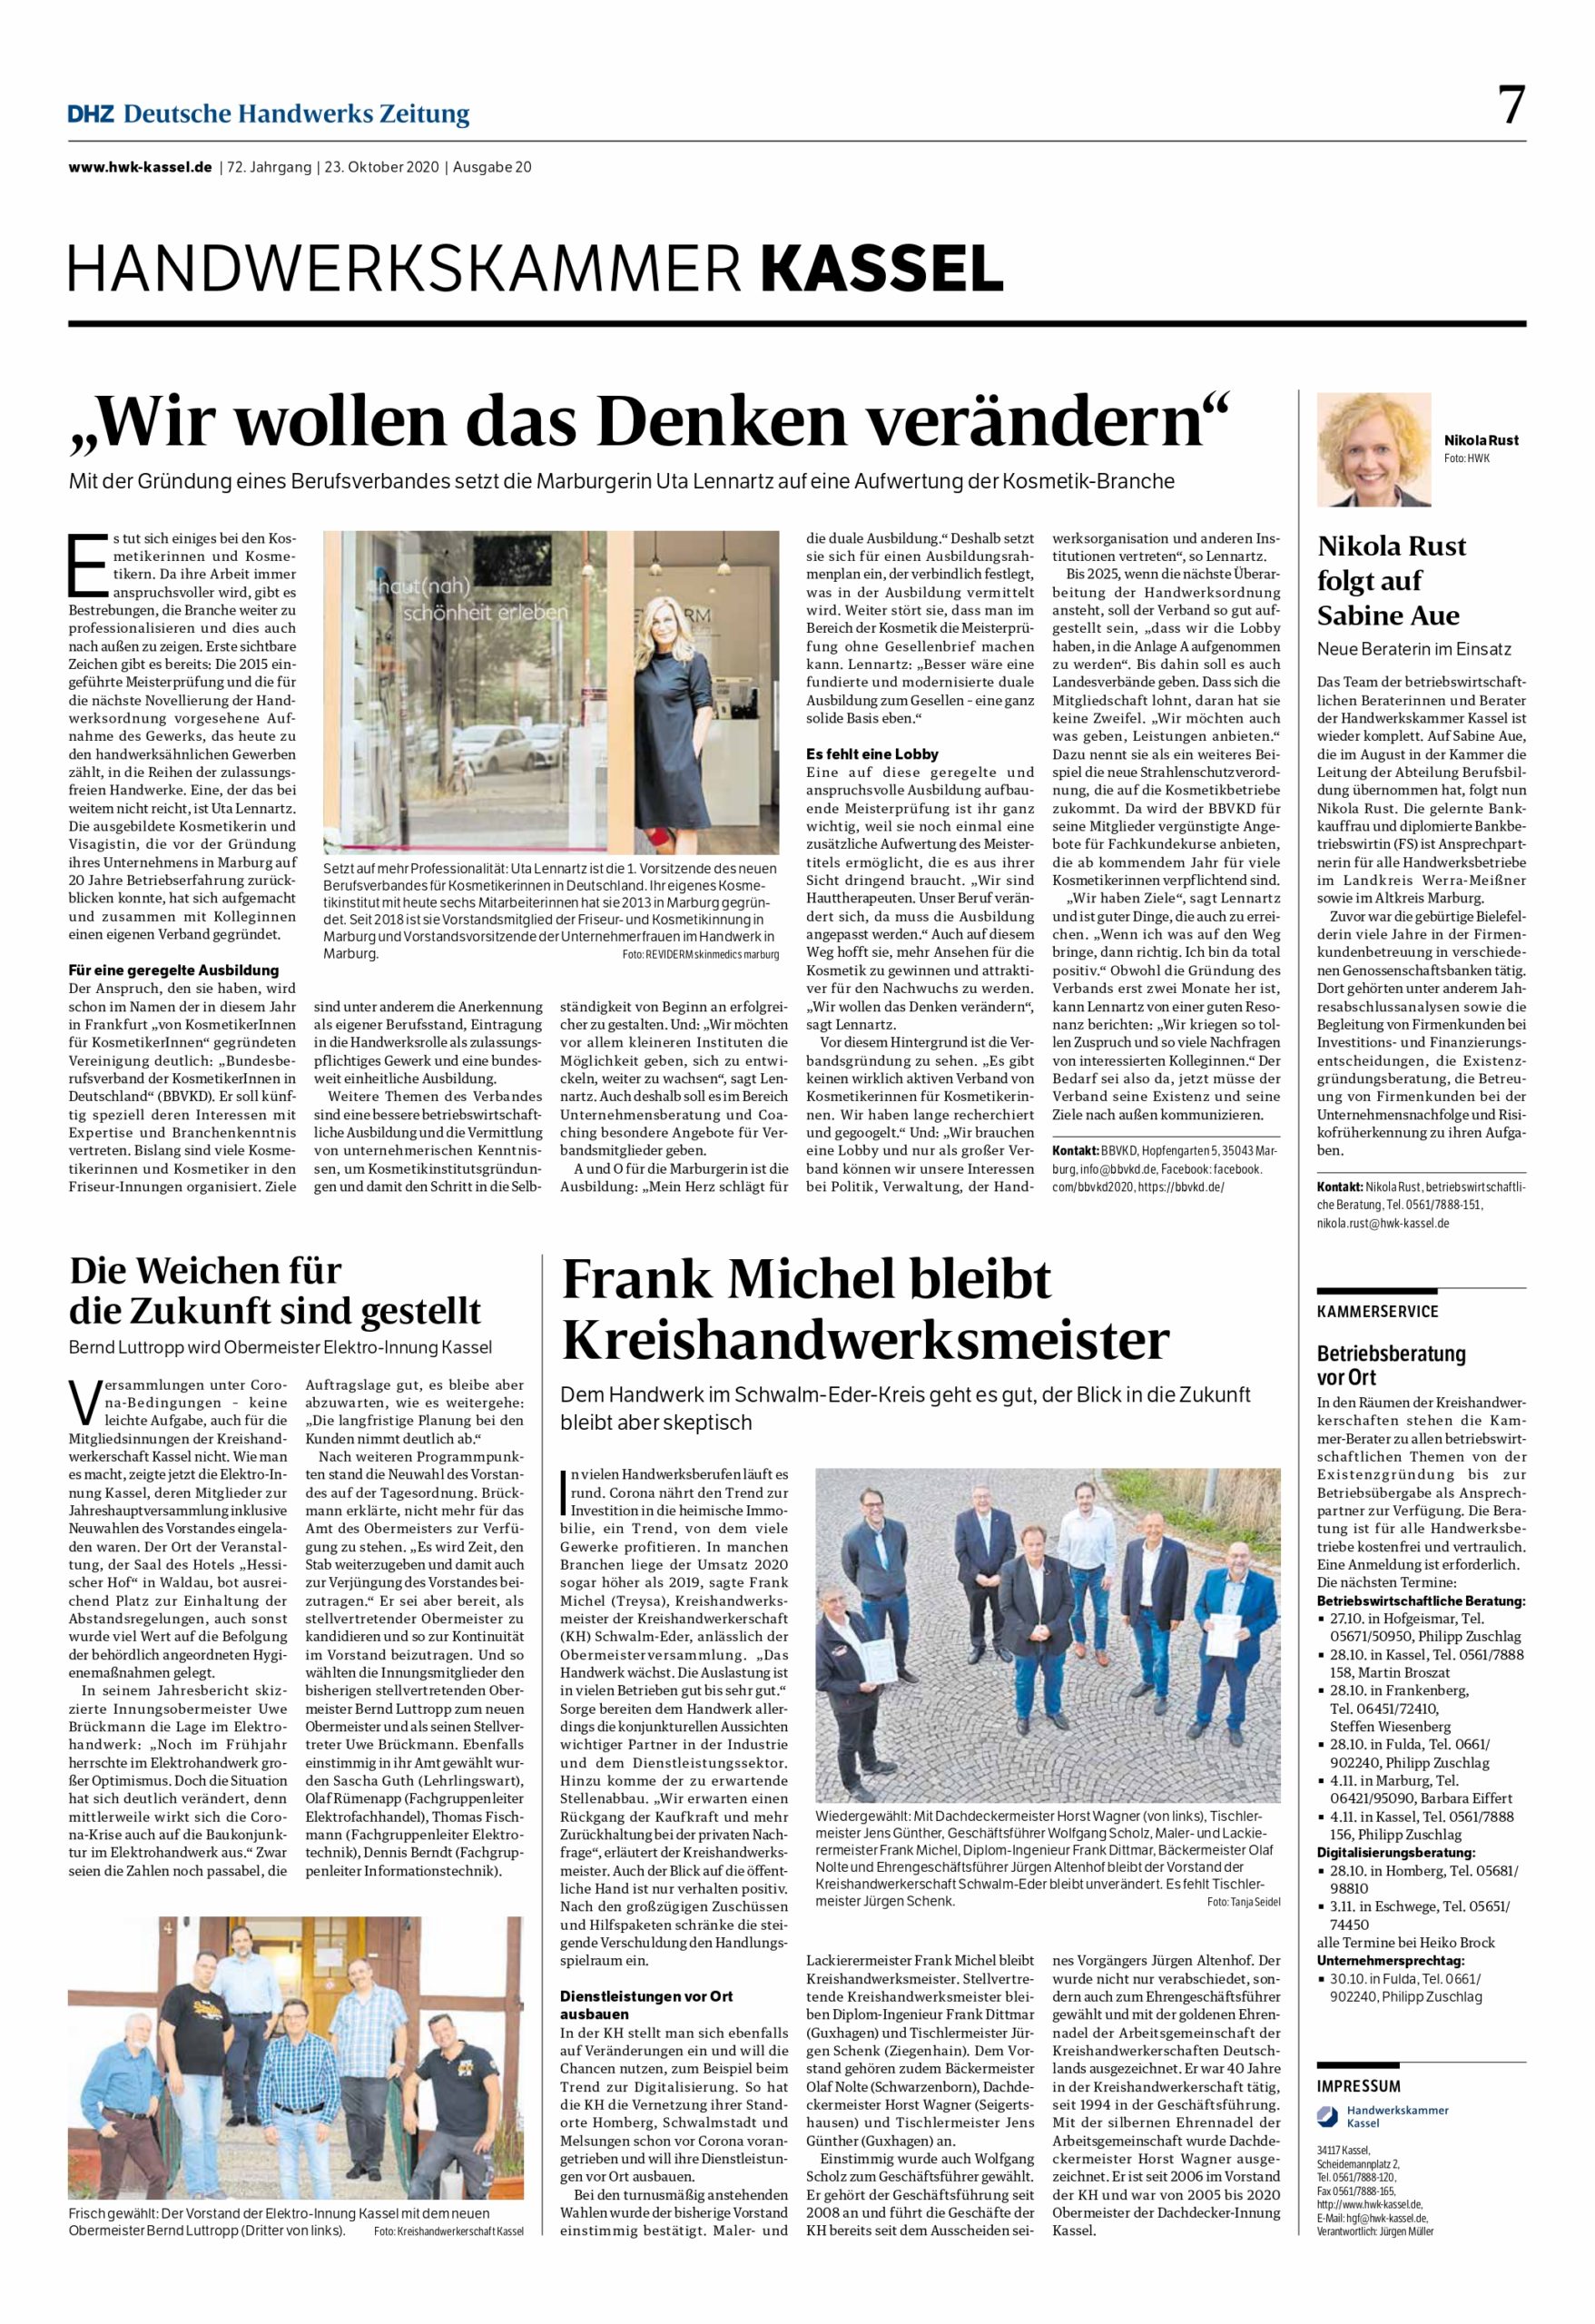 Featured image for “Deutsche Handwerks Zeitung vom 23.10.2020, Ausgabe 20, Oktober”